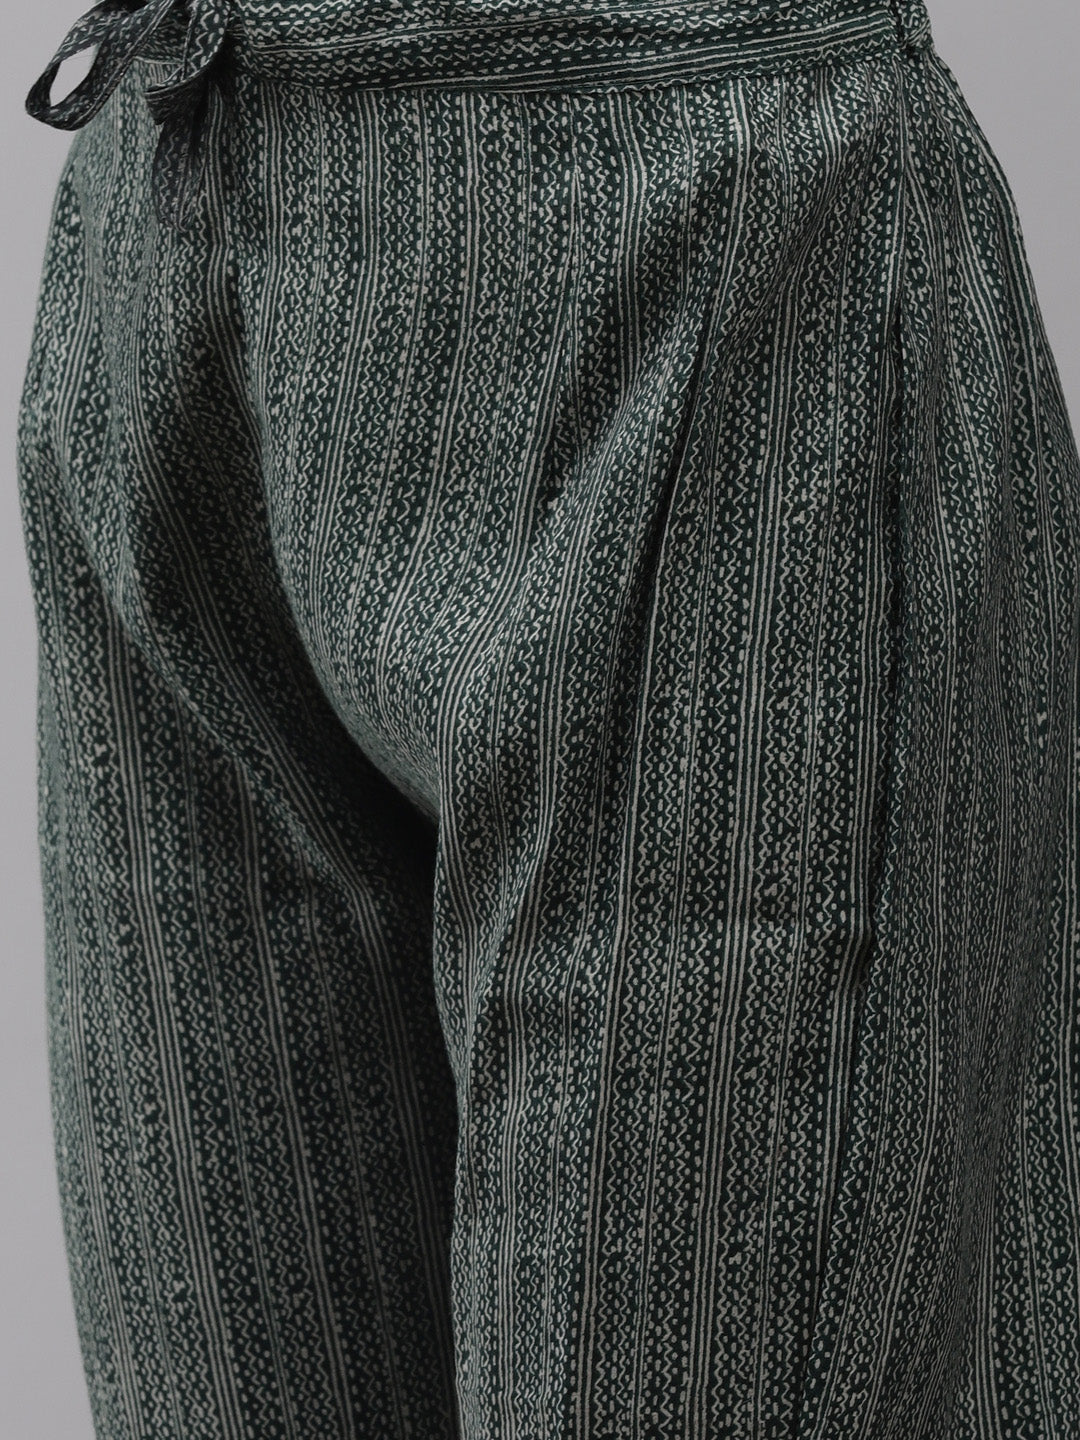 Women's Silk Blend Grey & Green Embroidered A-Line Kurta Trouser Dupatta Set - Navyaa